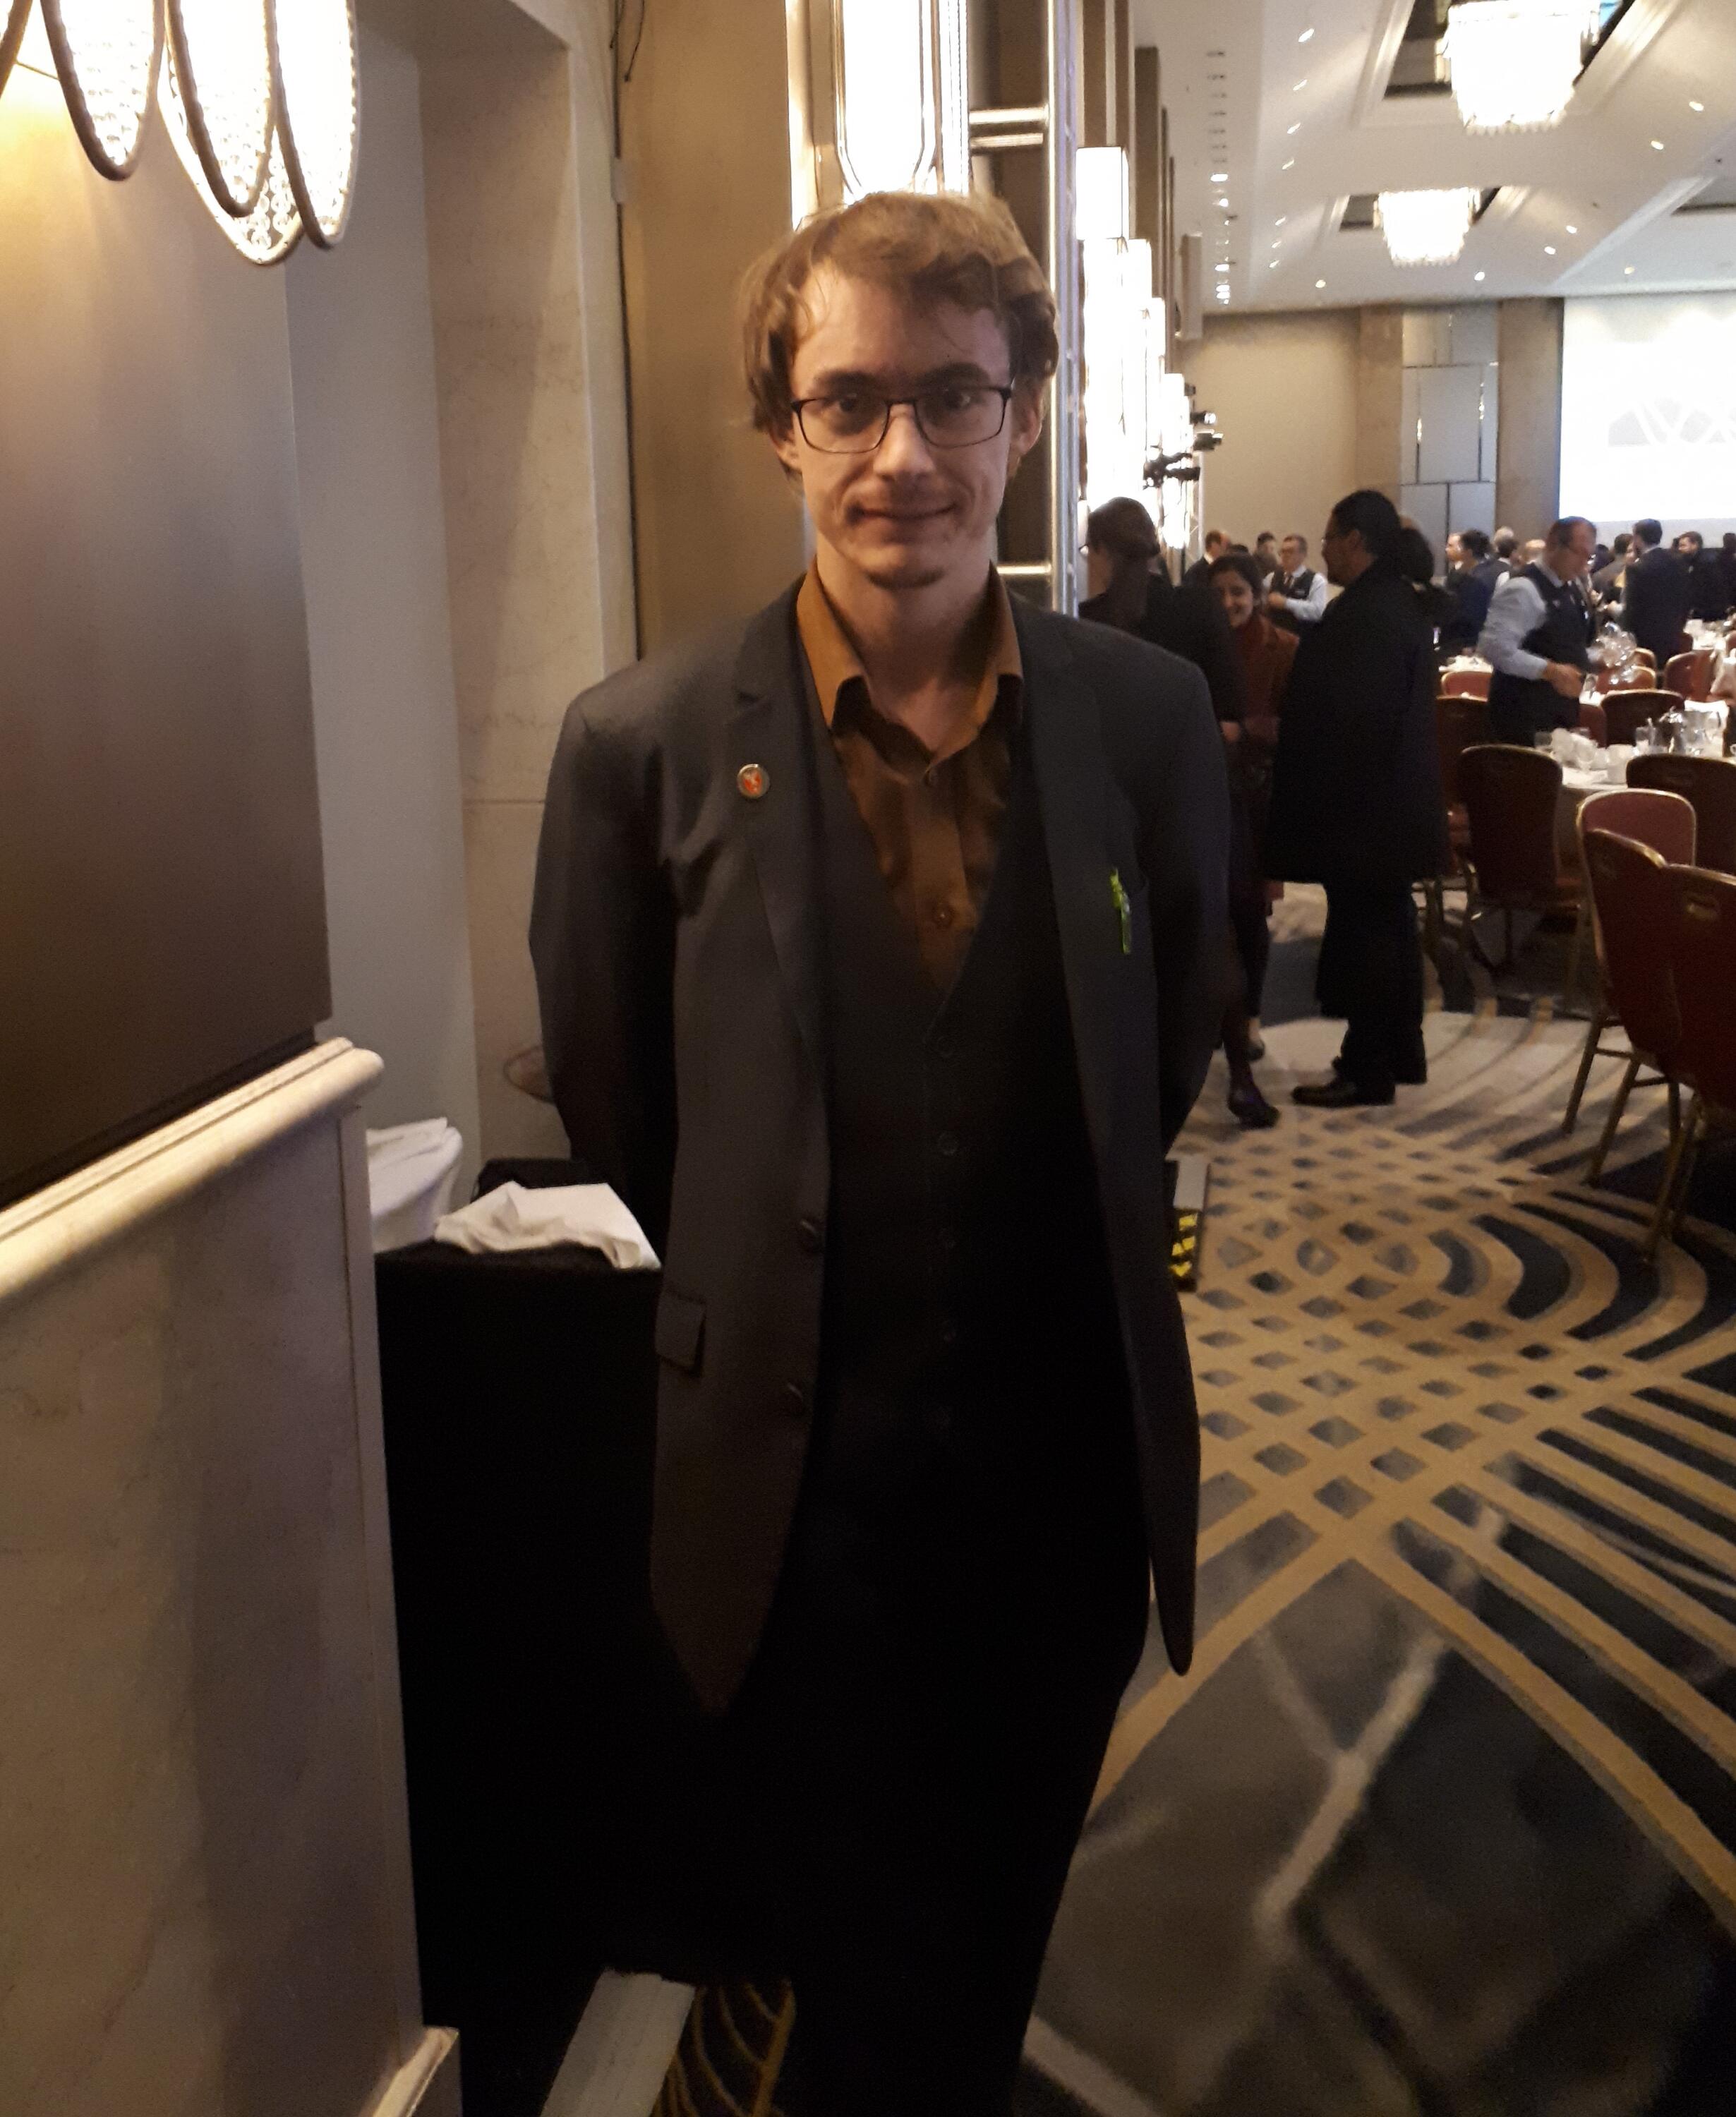 Photo of Matt standing in a banquet hall